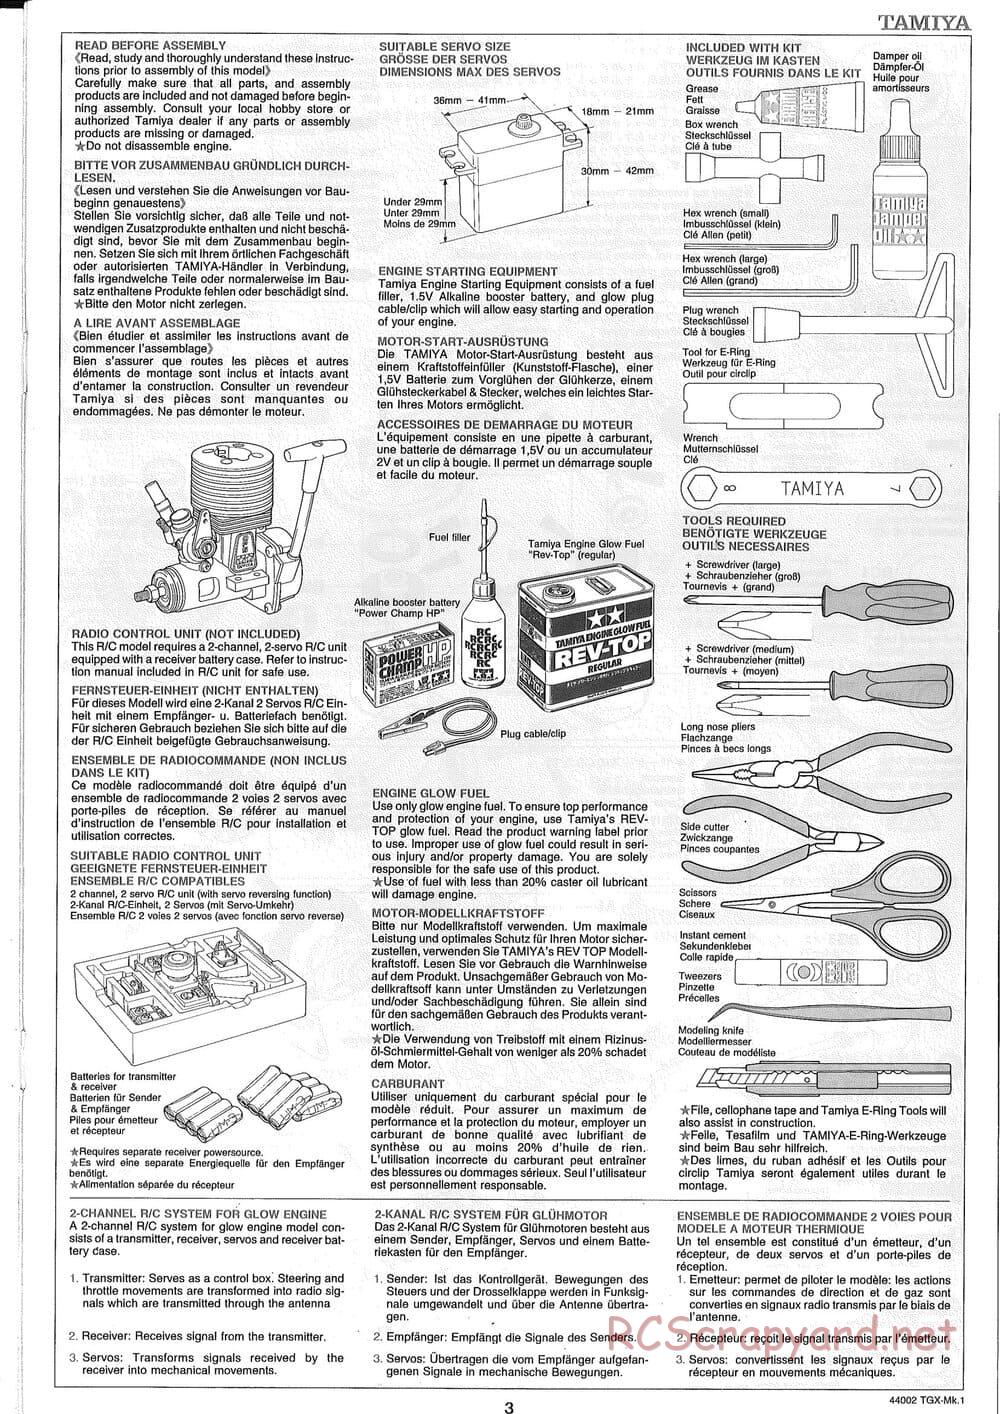 Tamiya - TGX Mk.1 TS Chassis Chassis - Manual - Page 3